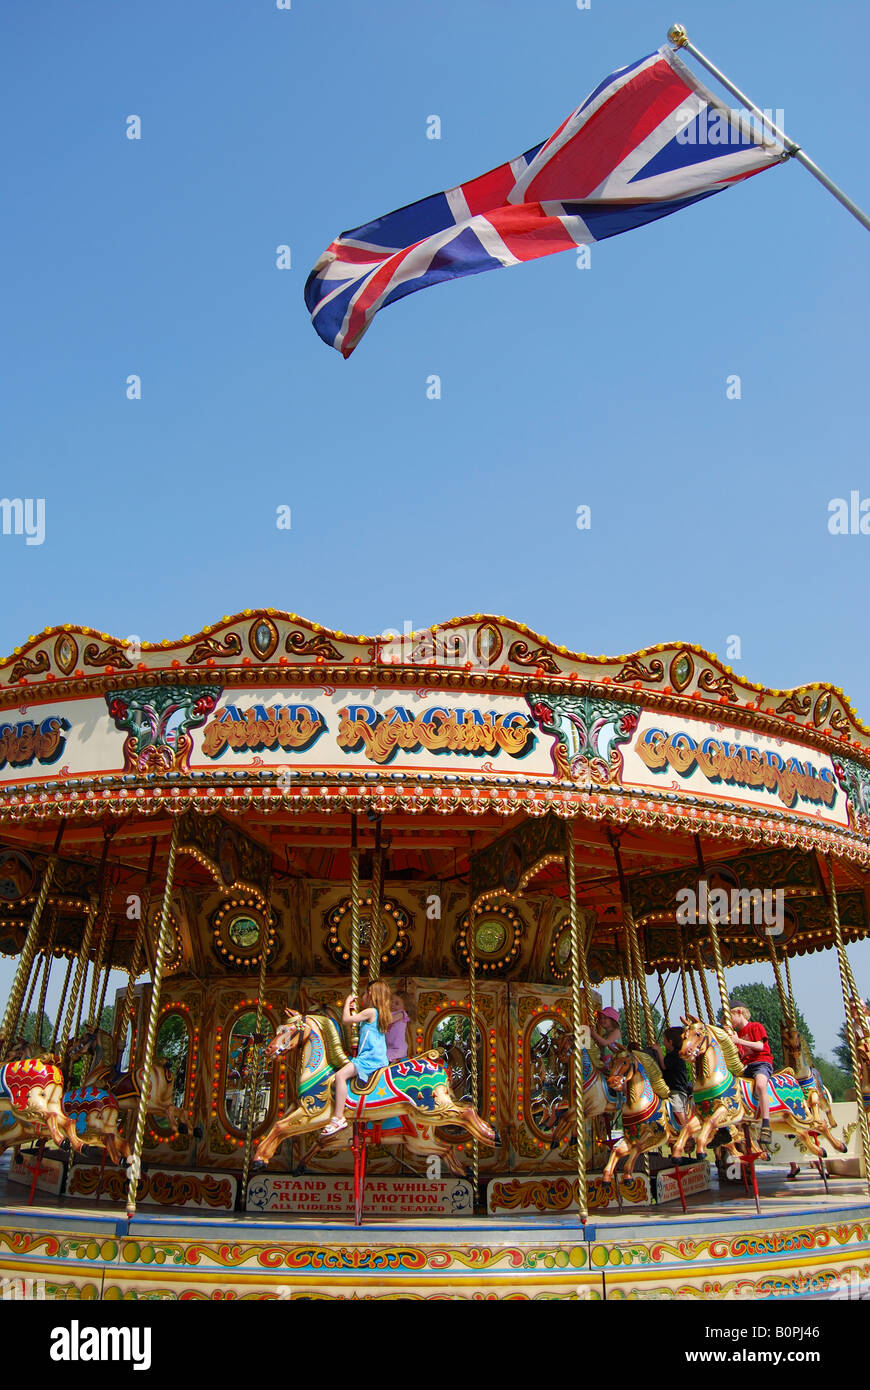 Carrousel pour enfants, Royal Windsor Horse Show, Home Park, Windsor, Berkshire, Angleterre, Royaume-Uni Banque D'Images